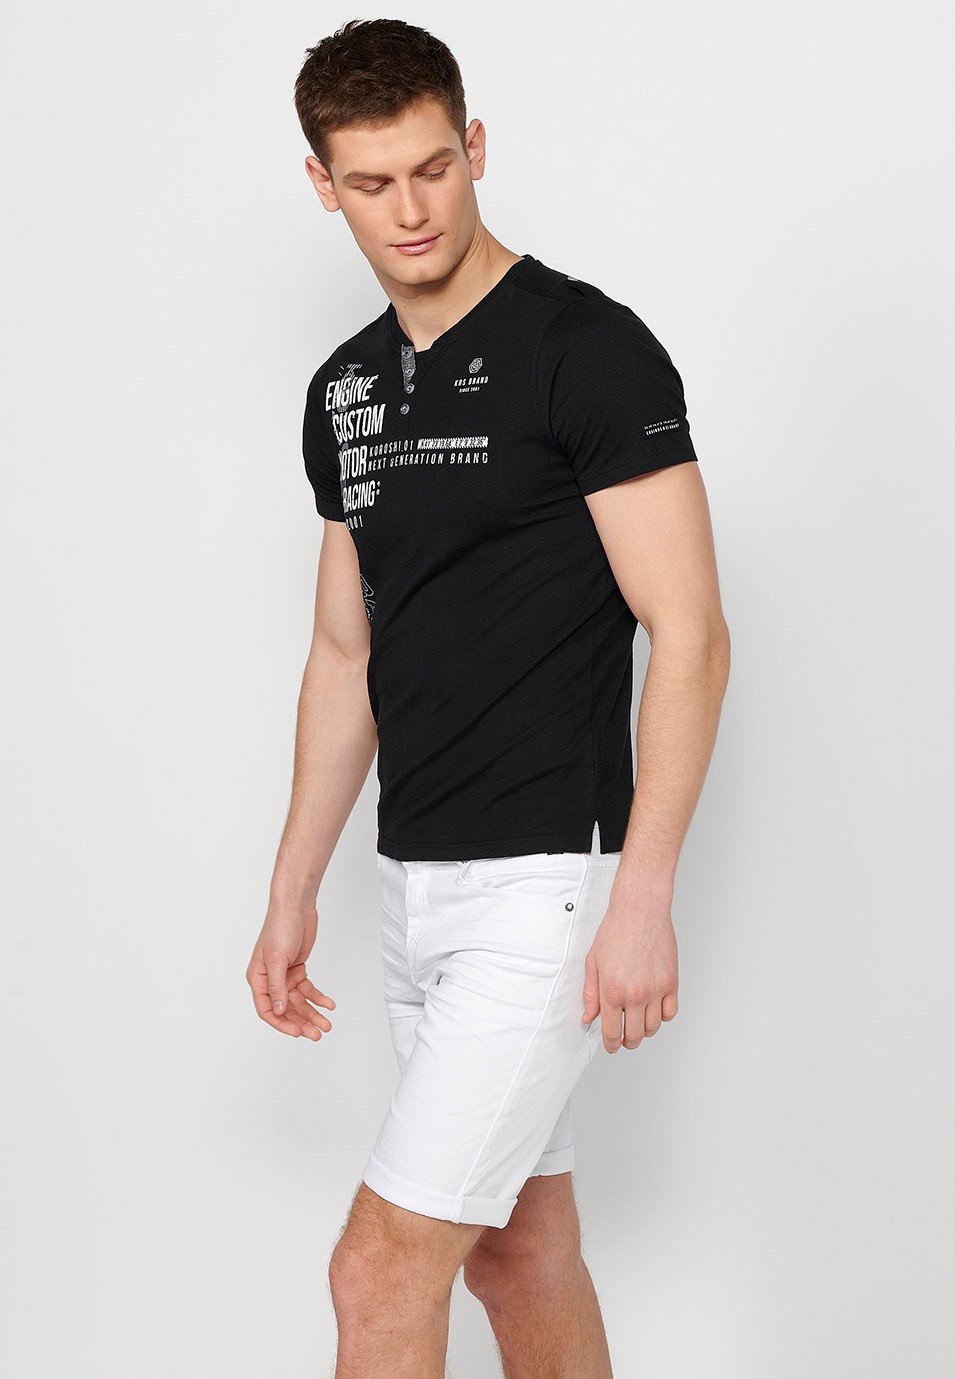 black Herren-T-Shirt aus Baumwolle mit kurzen Ärmeln, Rundhalsausschnitt und geknöpfter Öffnung